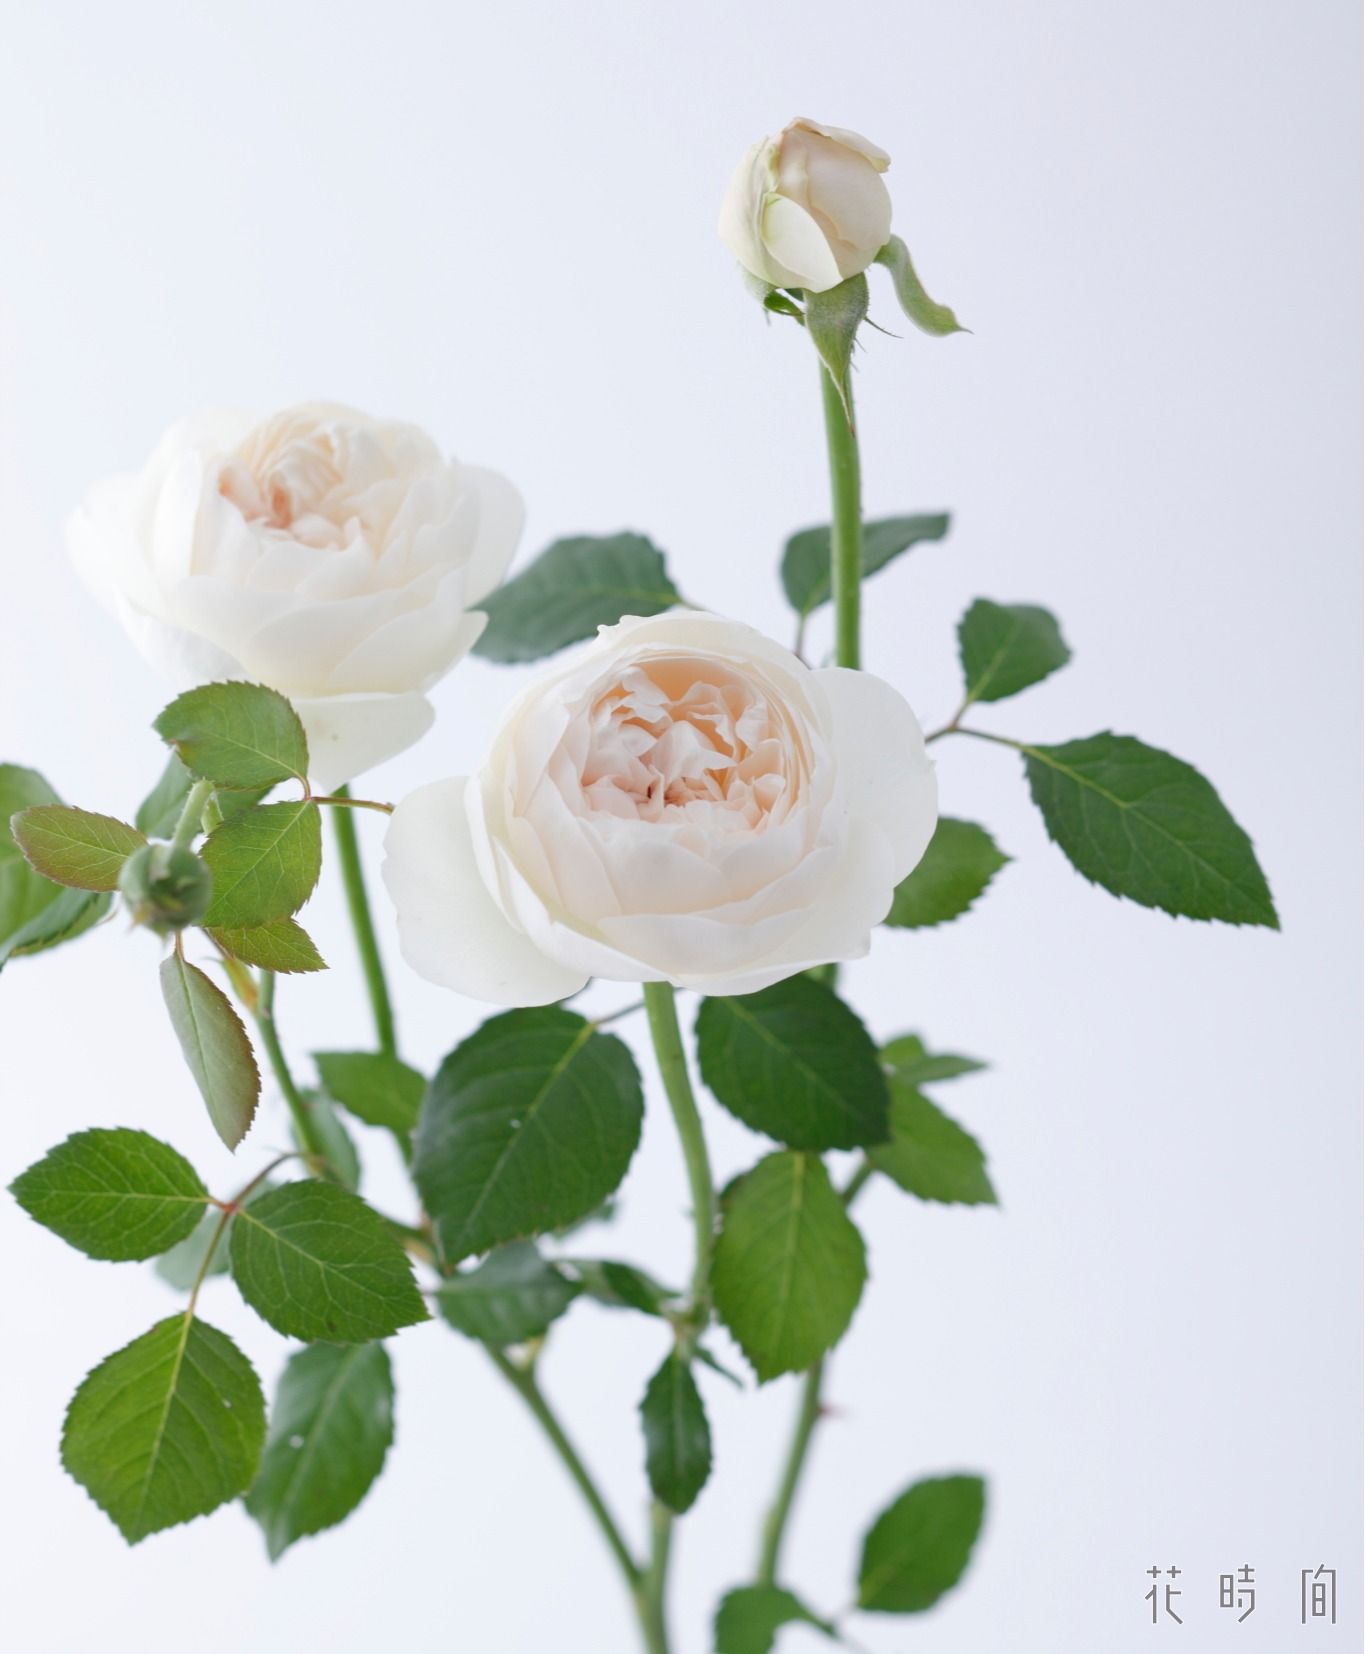 バラに託されたメッセージ 花言葉やバラにまつわる物語を紹介します Gardenstory ガーデンストーリー